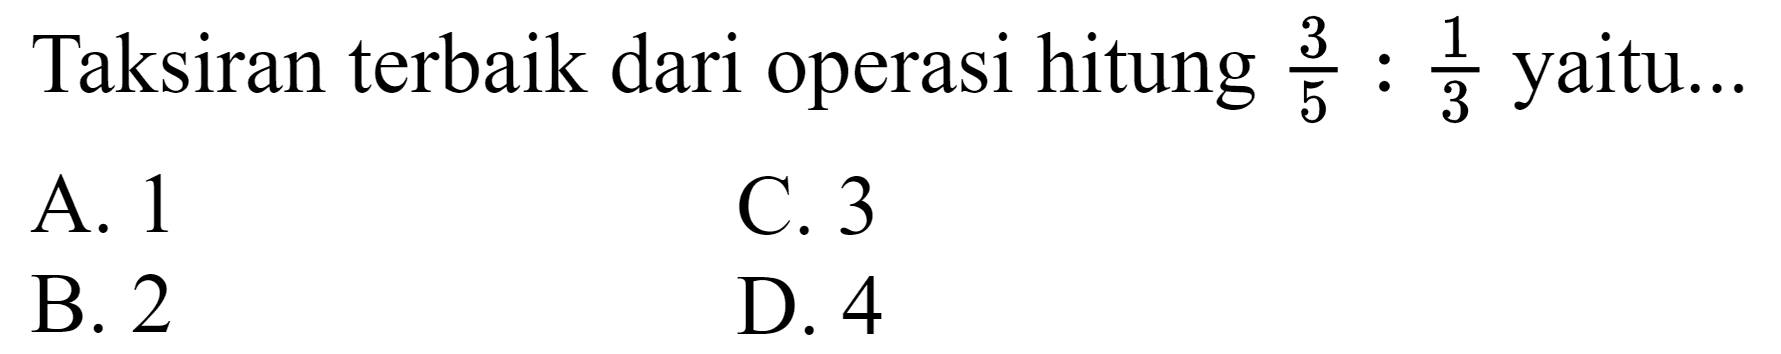 Taksiran terbaik dari operasi hitung  (3)/(5): (1)/(3)  yaitu...
A. 1
C. 3
B. 2
D. 4